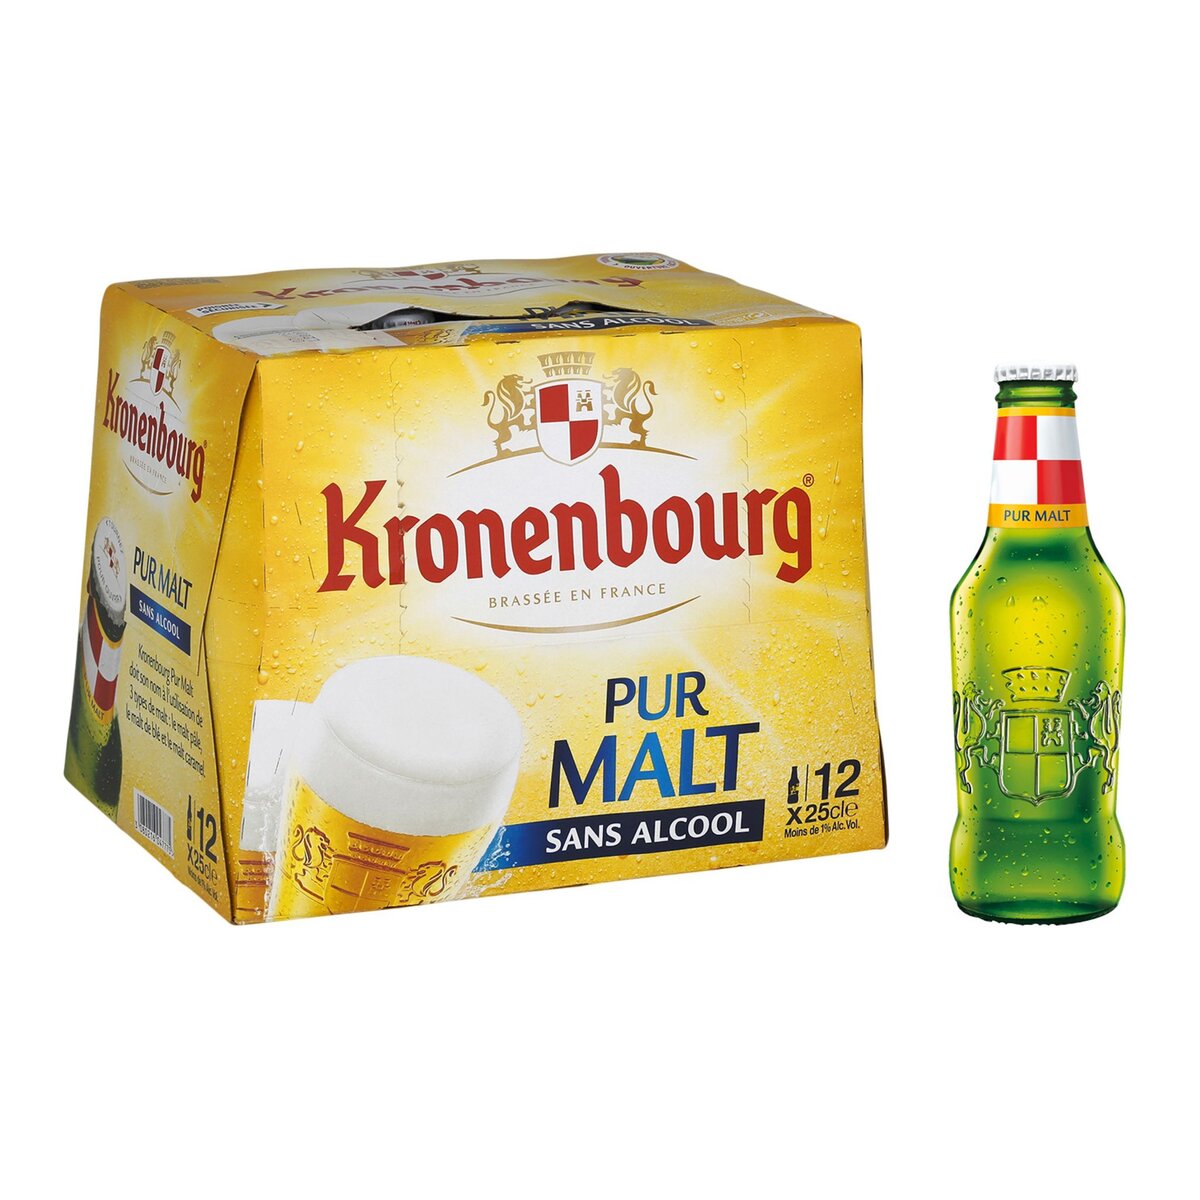 KRONENBOURG Kronenbourg Bière blonde pur malt sans alcool 0,4% bouteilles 12x25cl 12x25cl